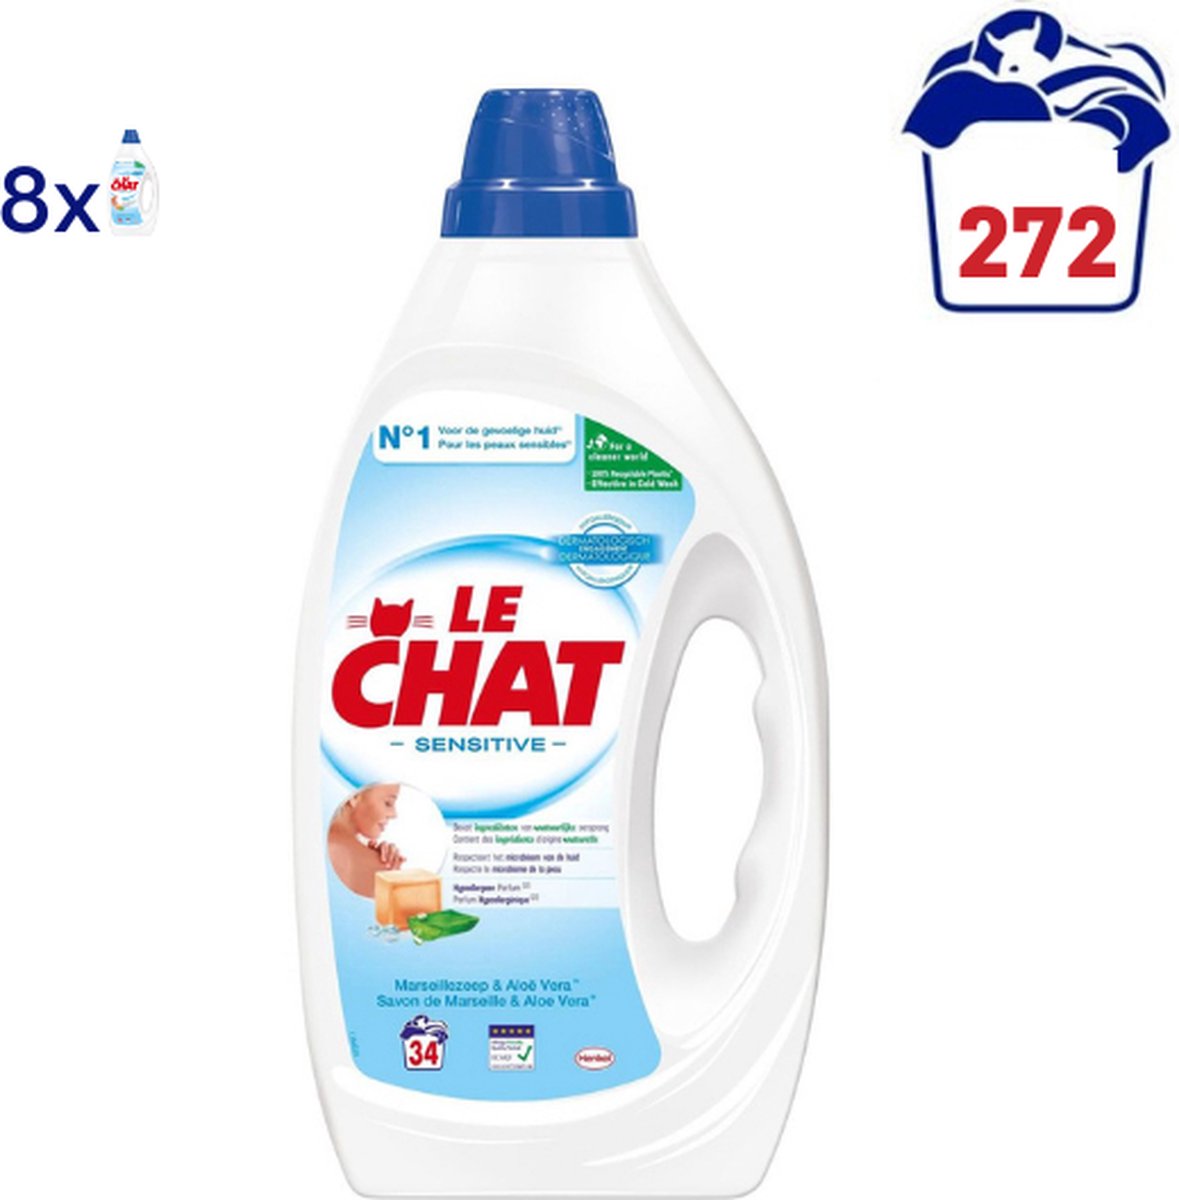 Lessive liquide Le Chat Sensitive - 8 x 1,7 l (272 lavages) | bol